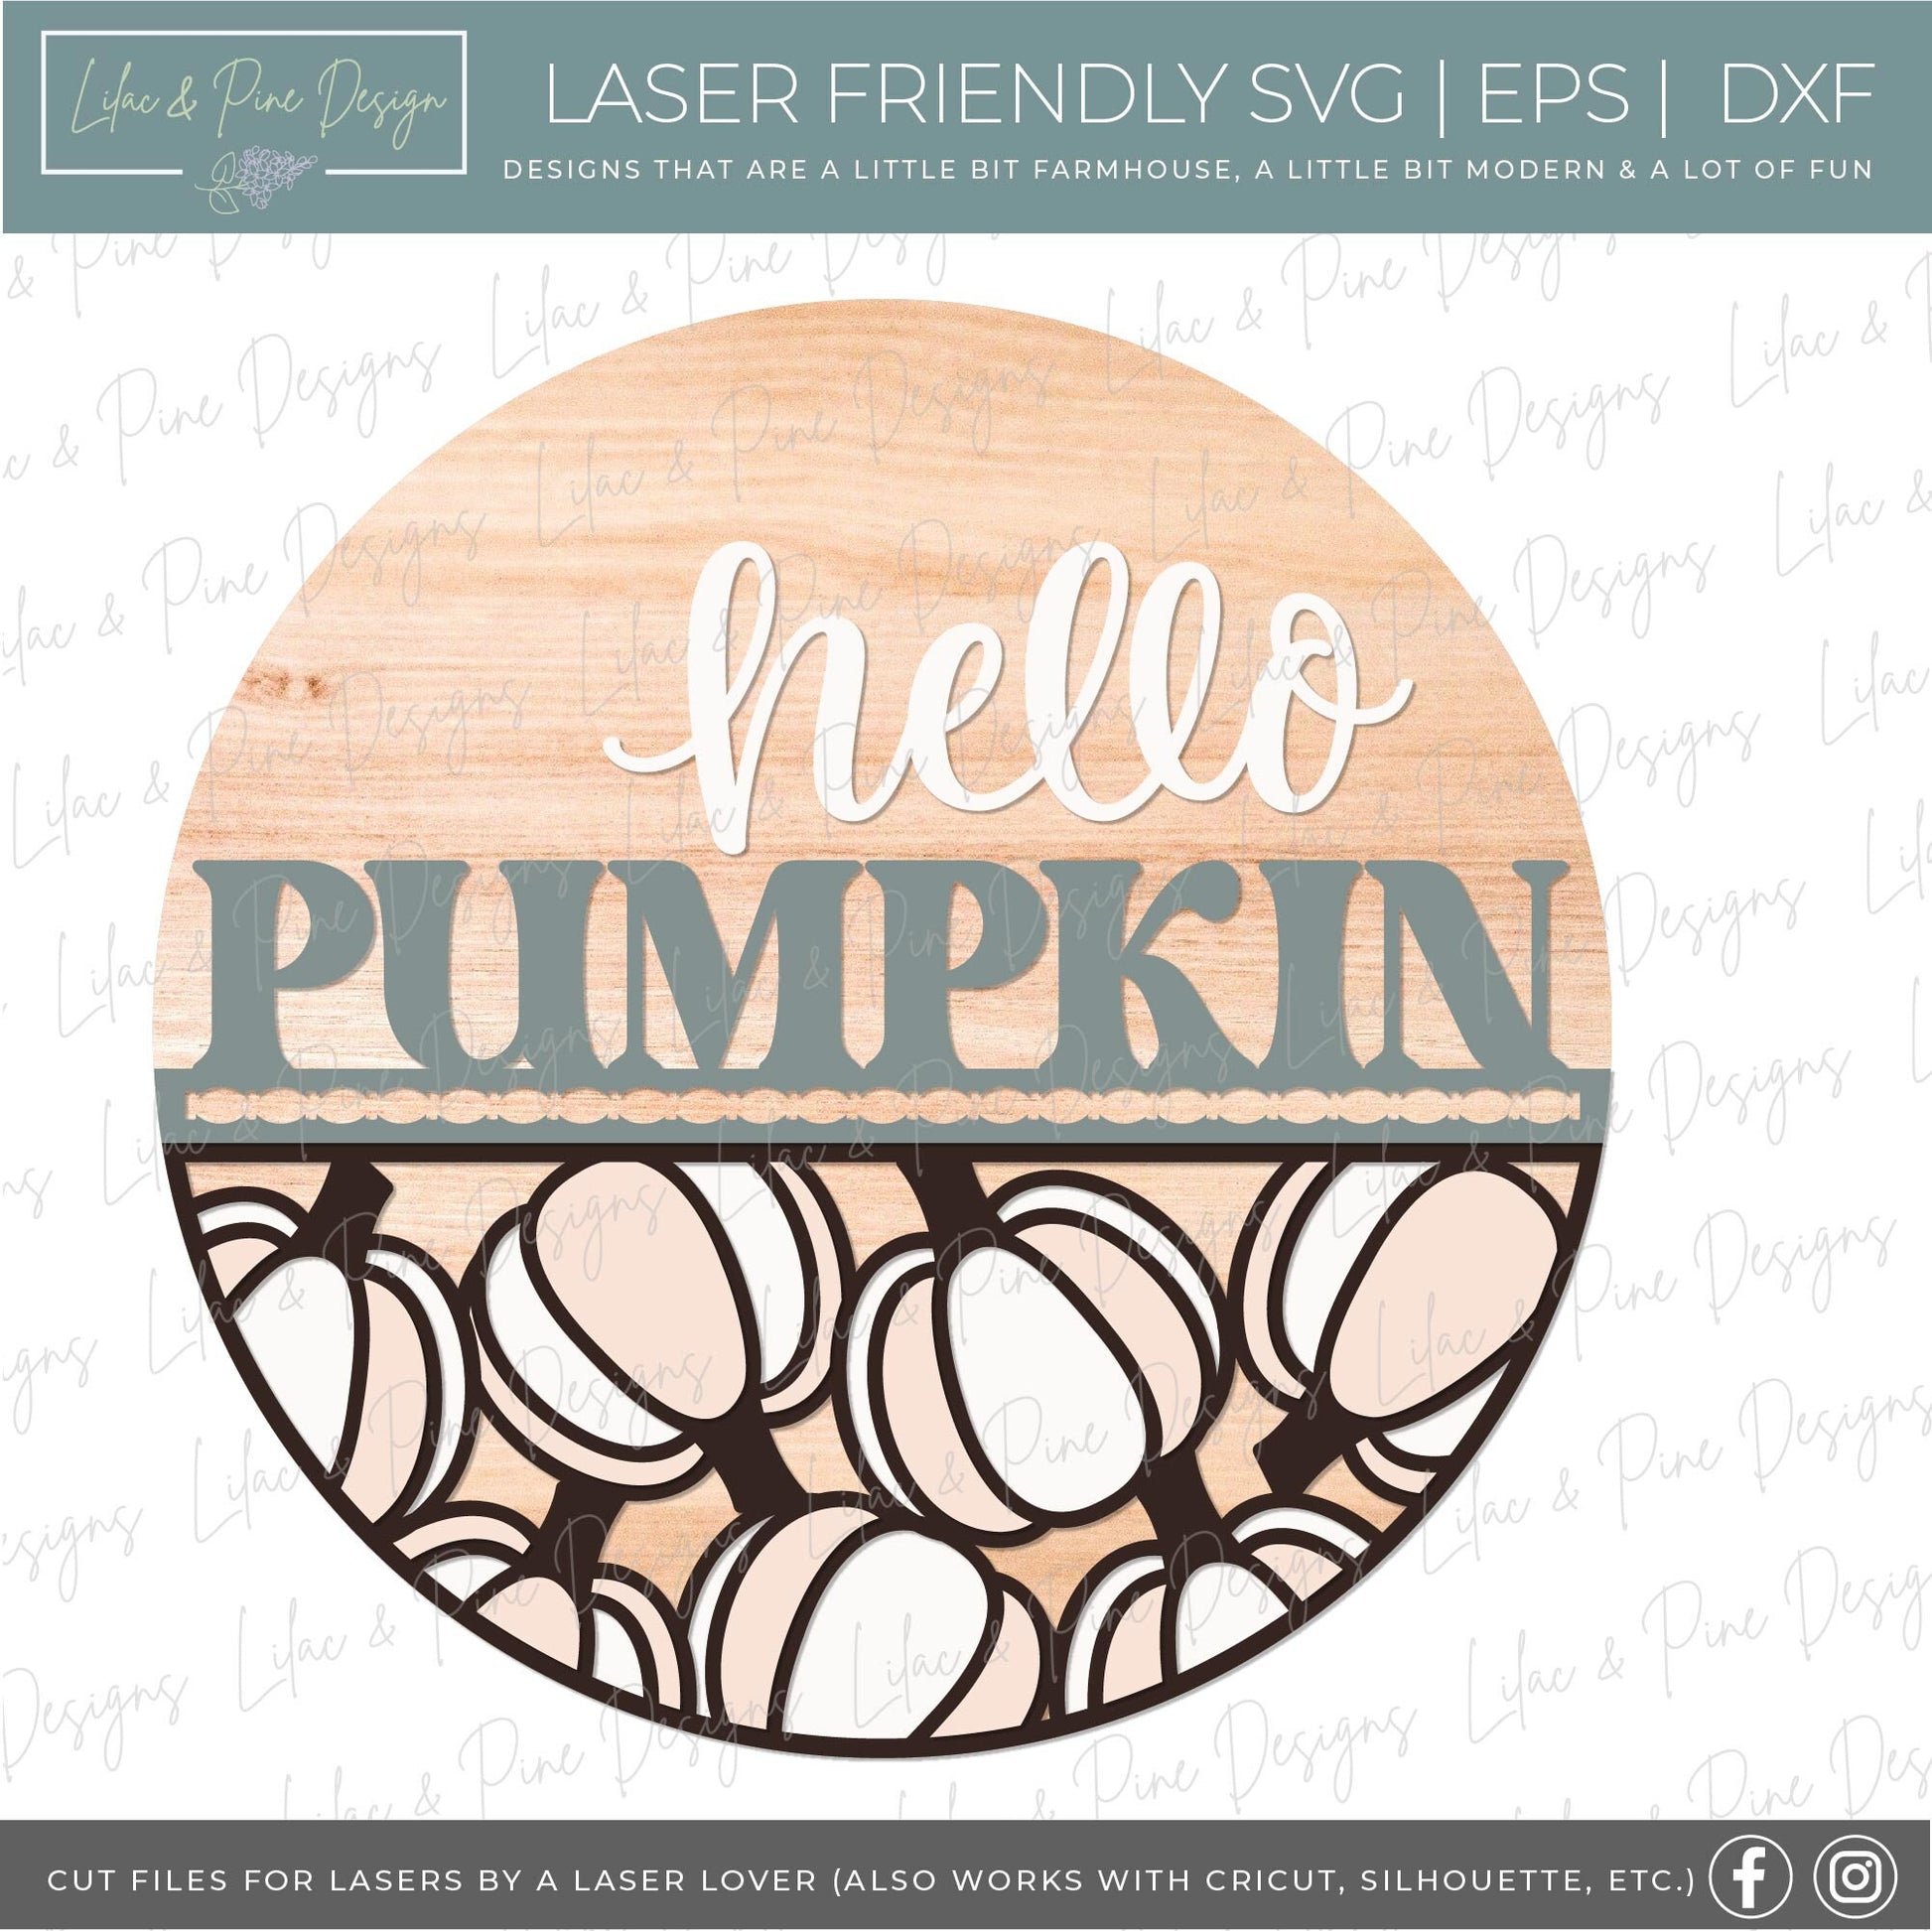 Pumpkin door hanger SVG, Fall door hanger, Help Pumpkin sign, Pumpkin welcome sign SVG, fall decor, Glowforge laser SVG, laser cut file